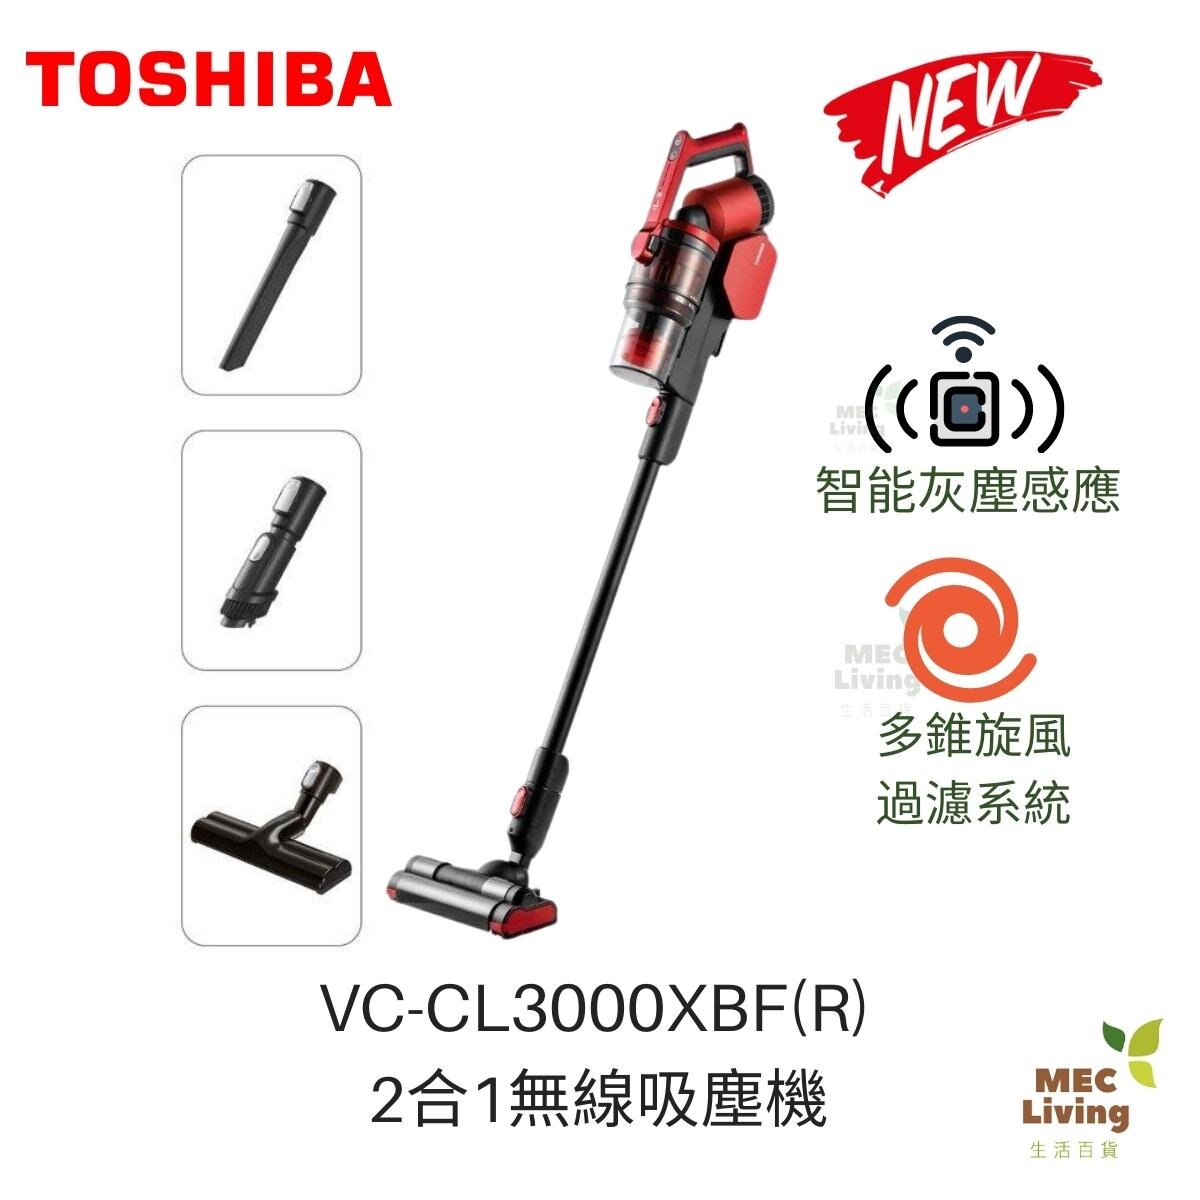 TOSHIBA VC-CL1400(R)-